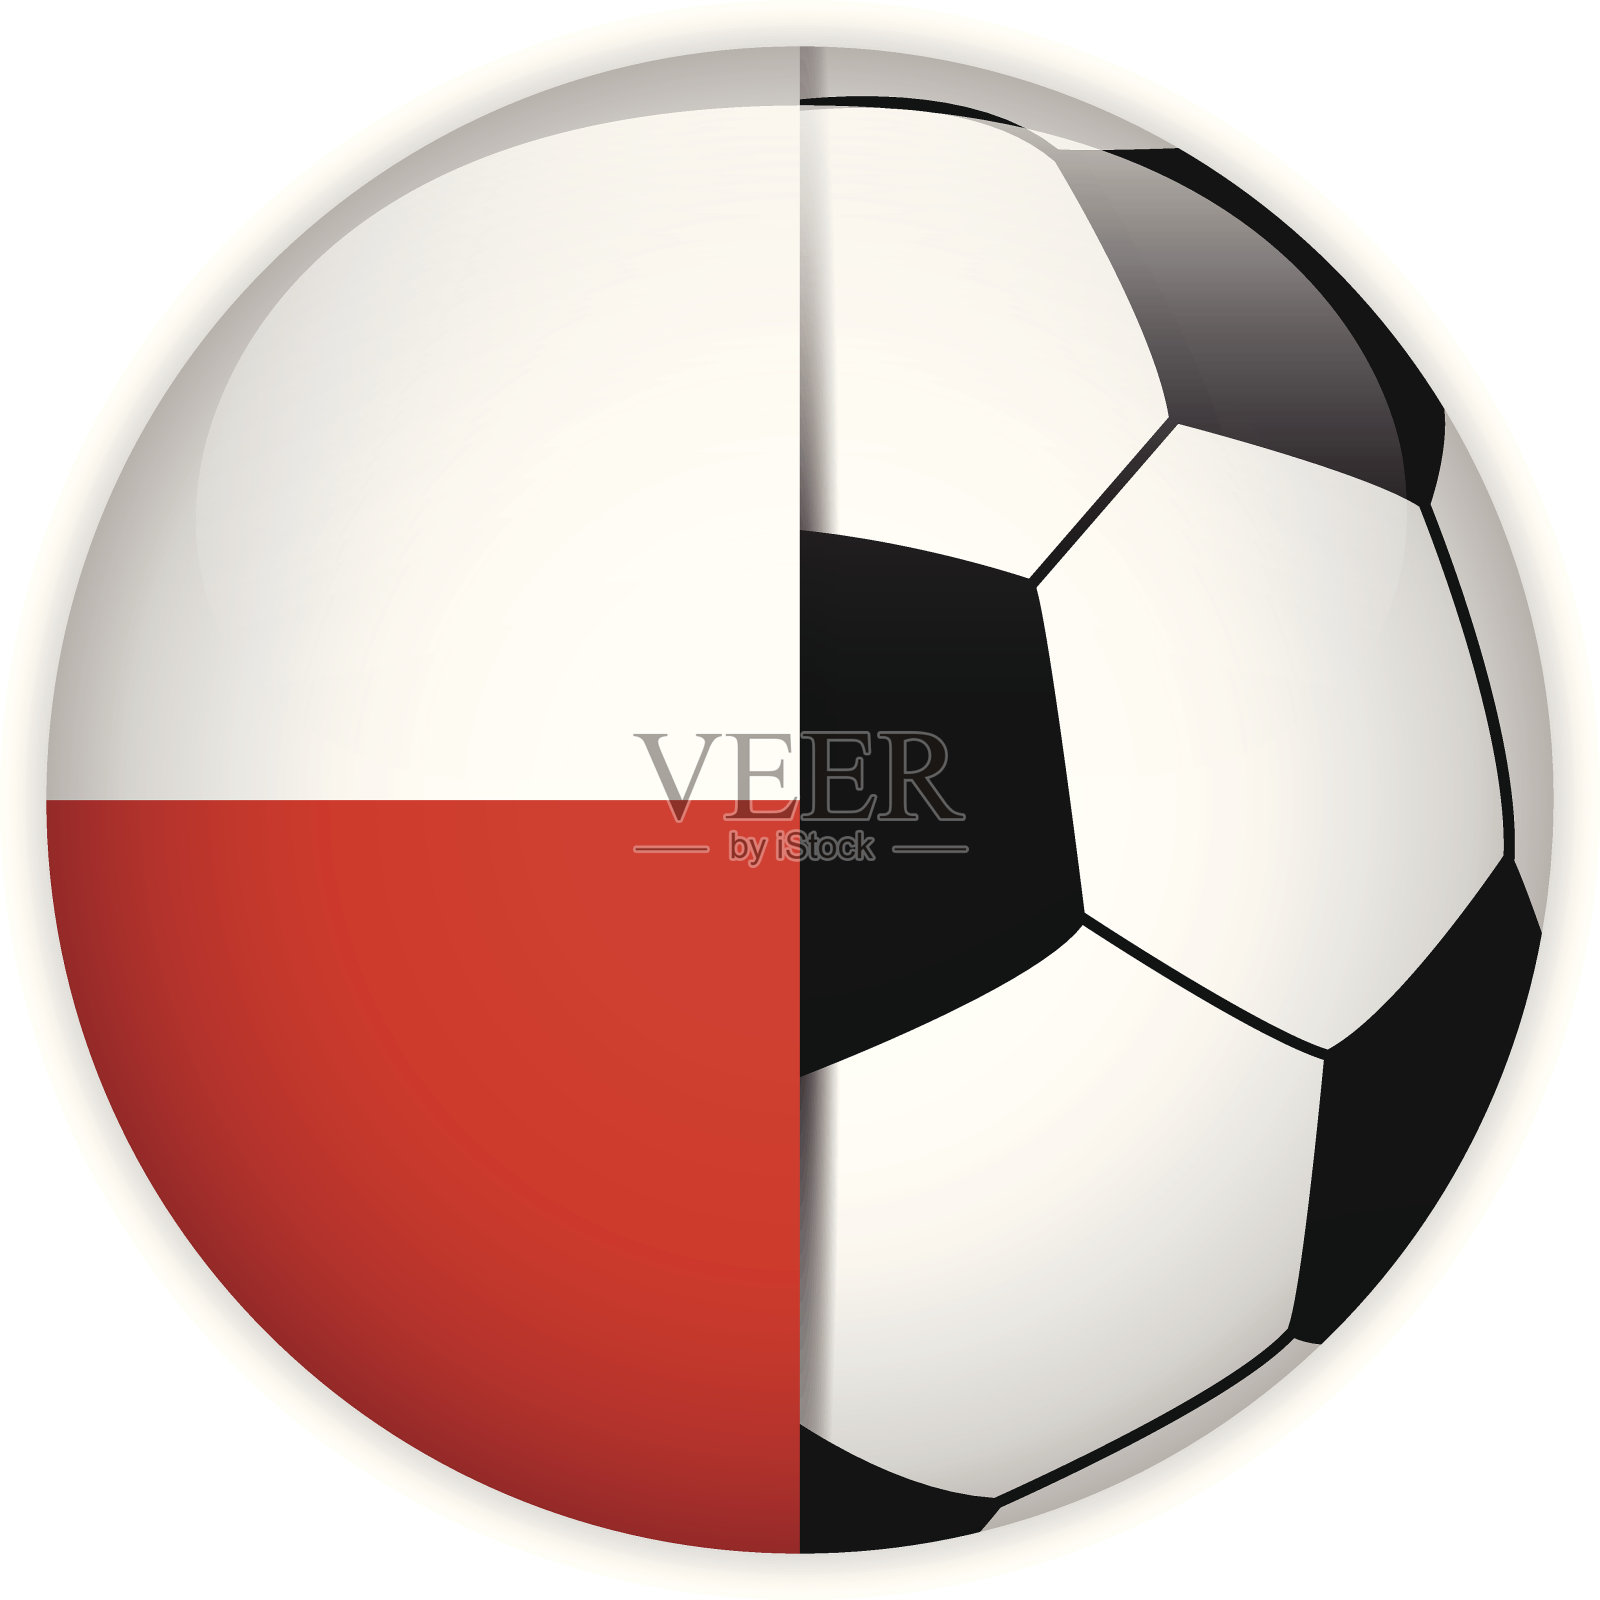 波兰国旗与足球背景插画图片素材